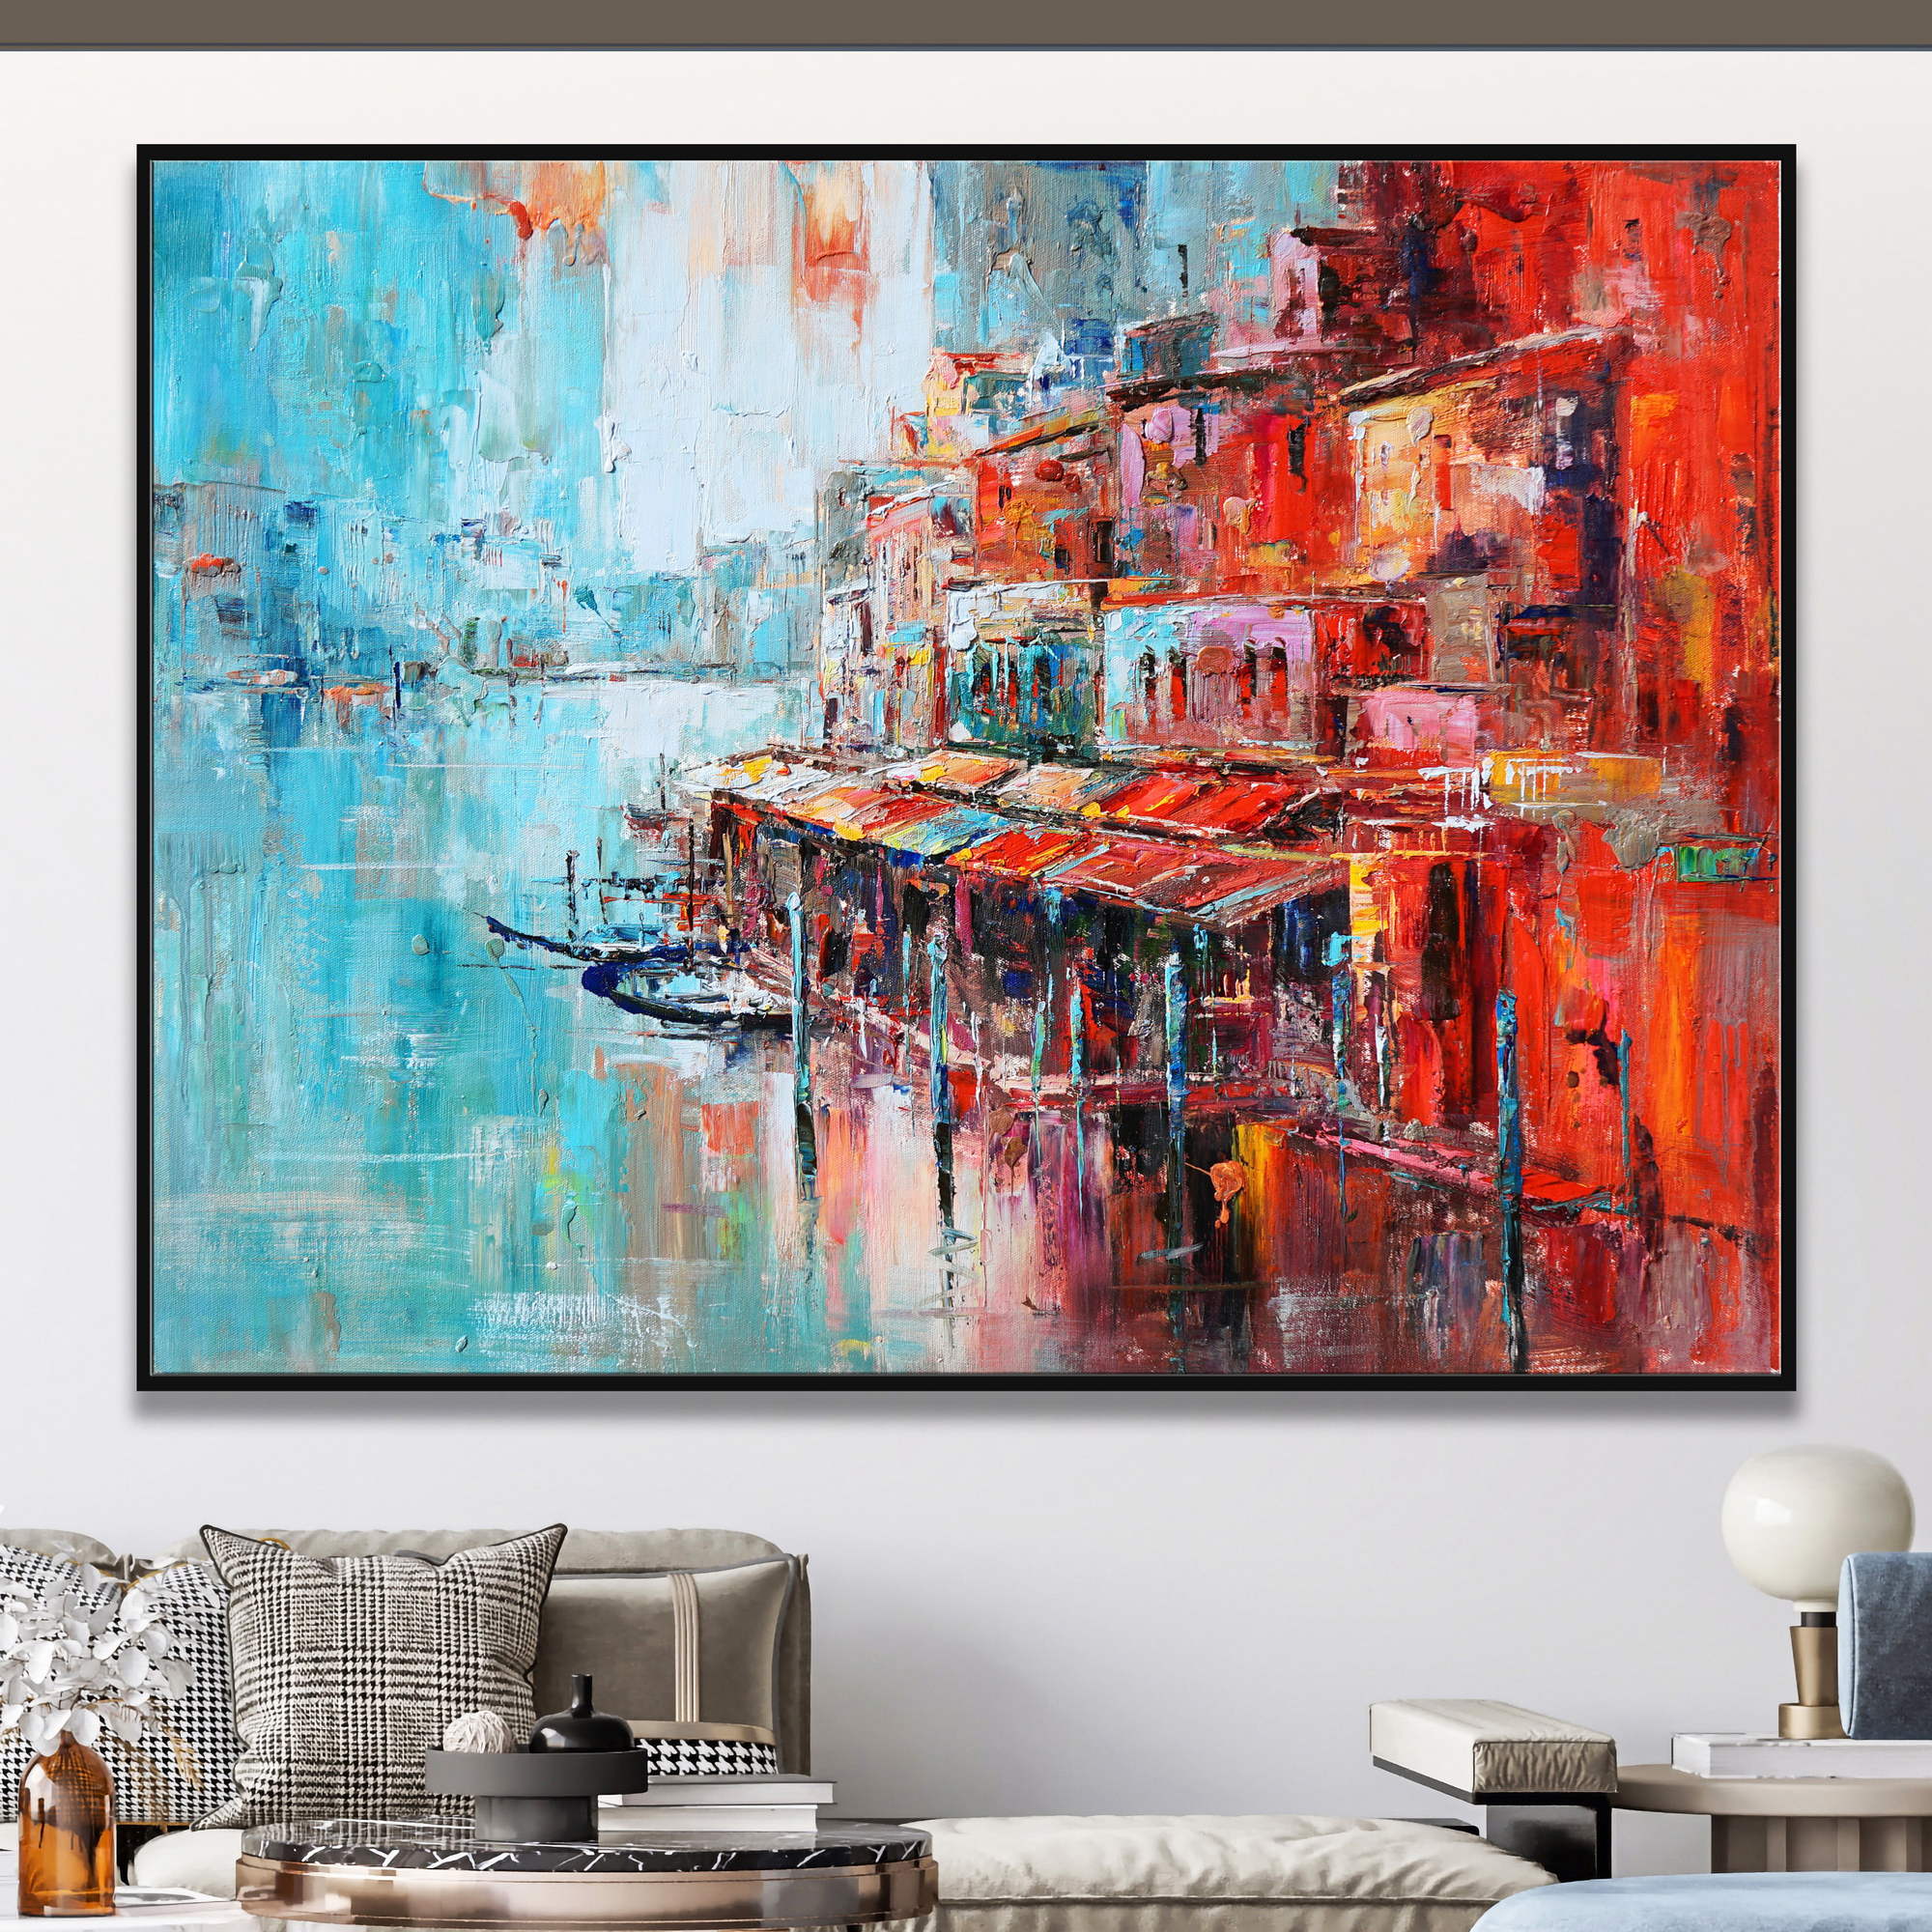 Dipinto astratto di Venezia con gondole sul canale e edifici colorati che si specchiano sull'acqua